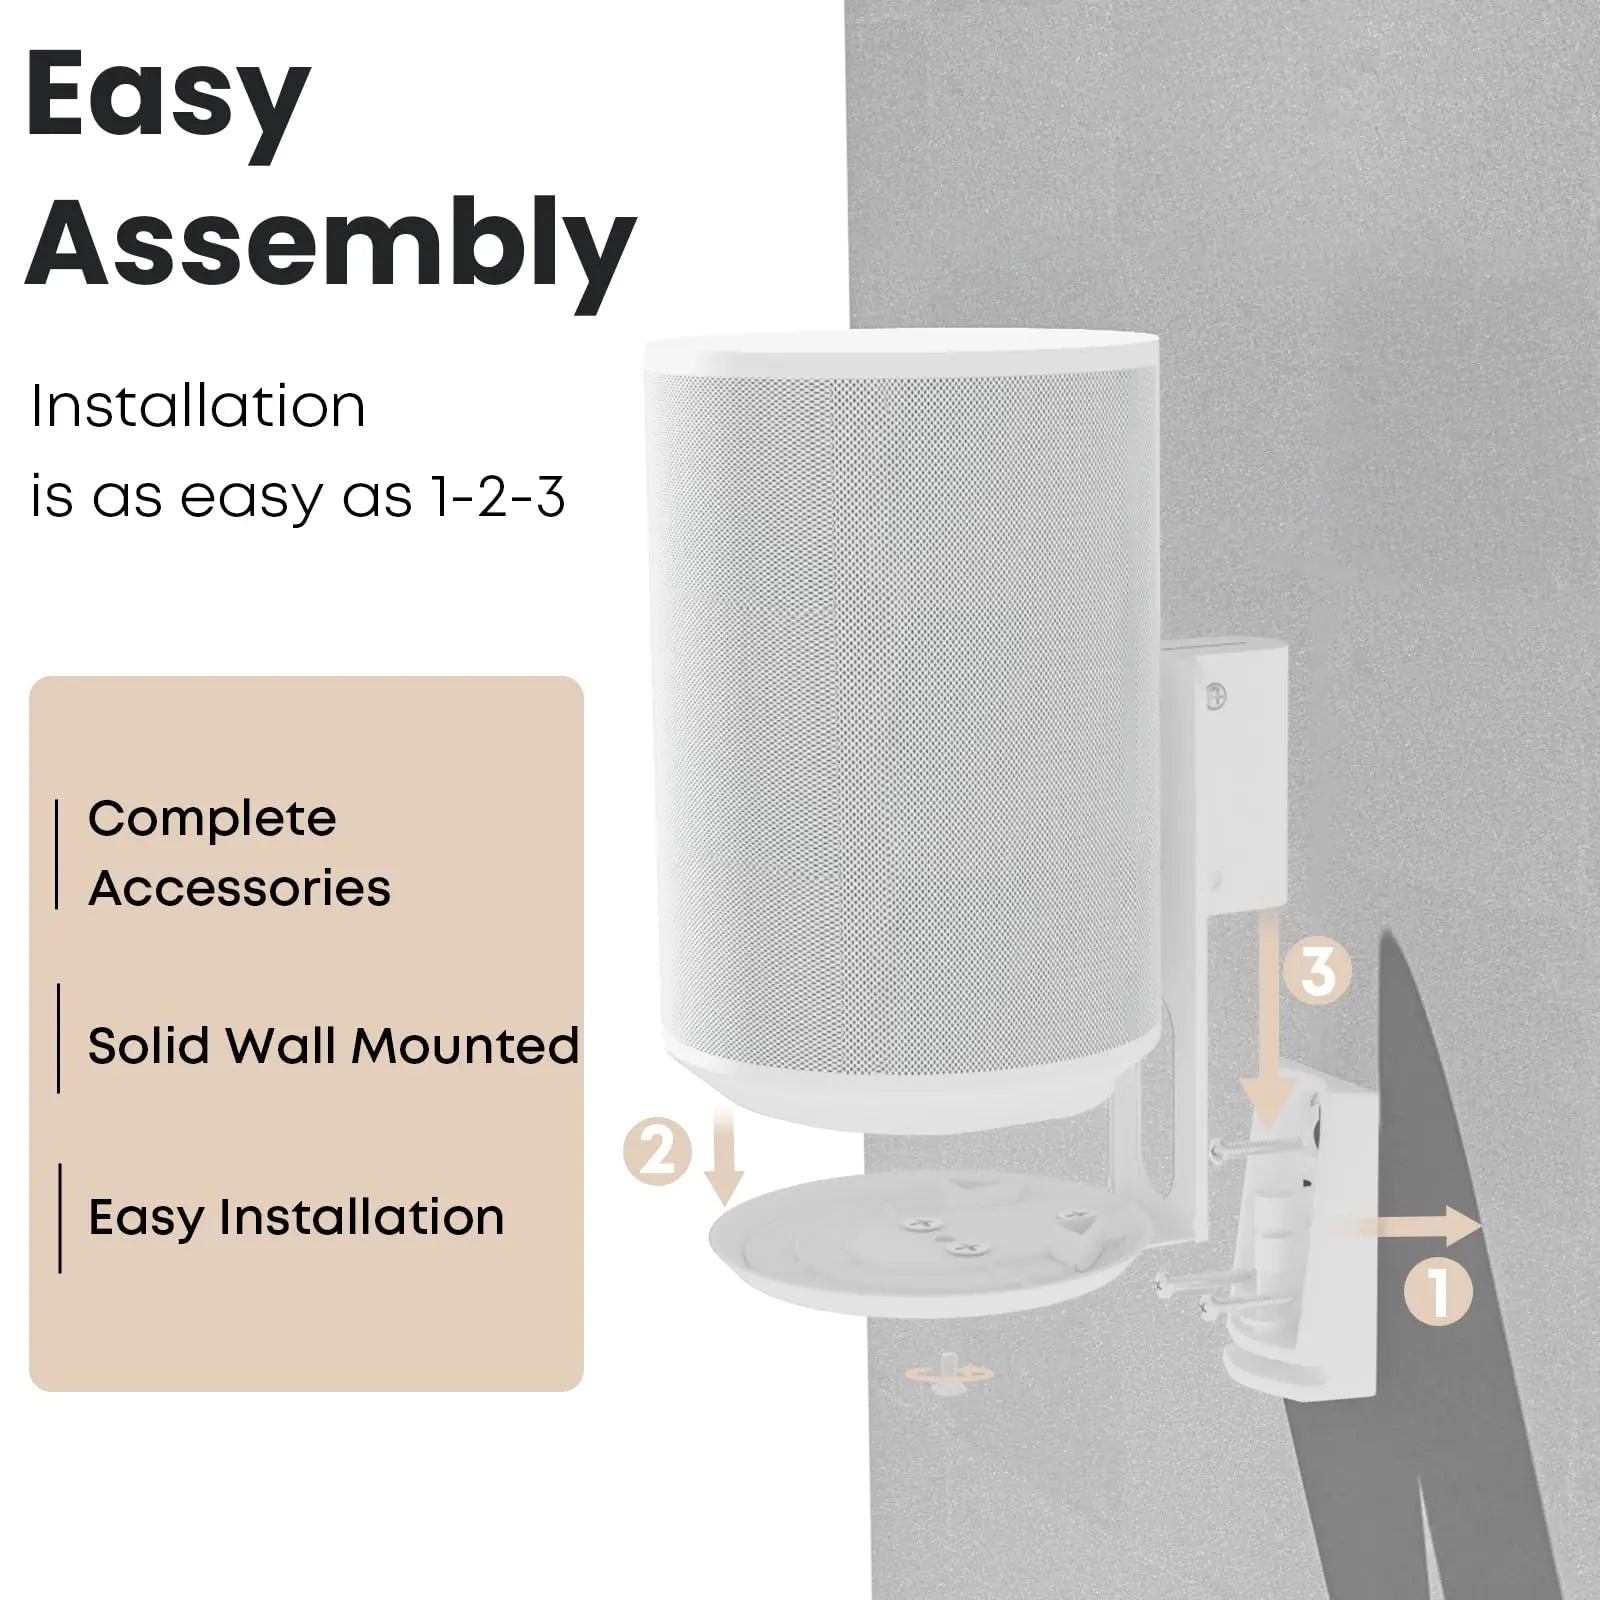 PUTORSEN Speaker Wall Mount for Sonos Era 100,Tilt & Swivel Speaker Shelf Bracket for Better Audio Enjoyment,Cable Management,Hold up to 6.6lbs (1 Pack White) PUTORSEN